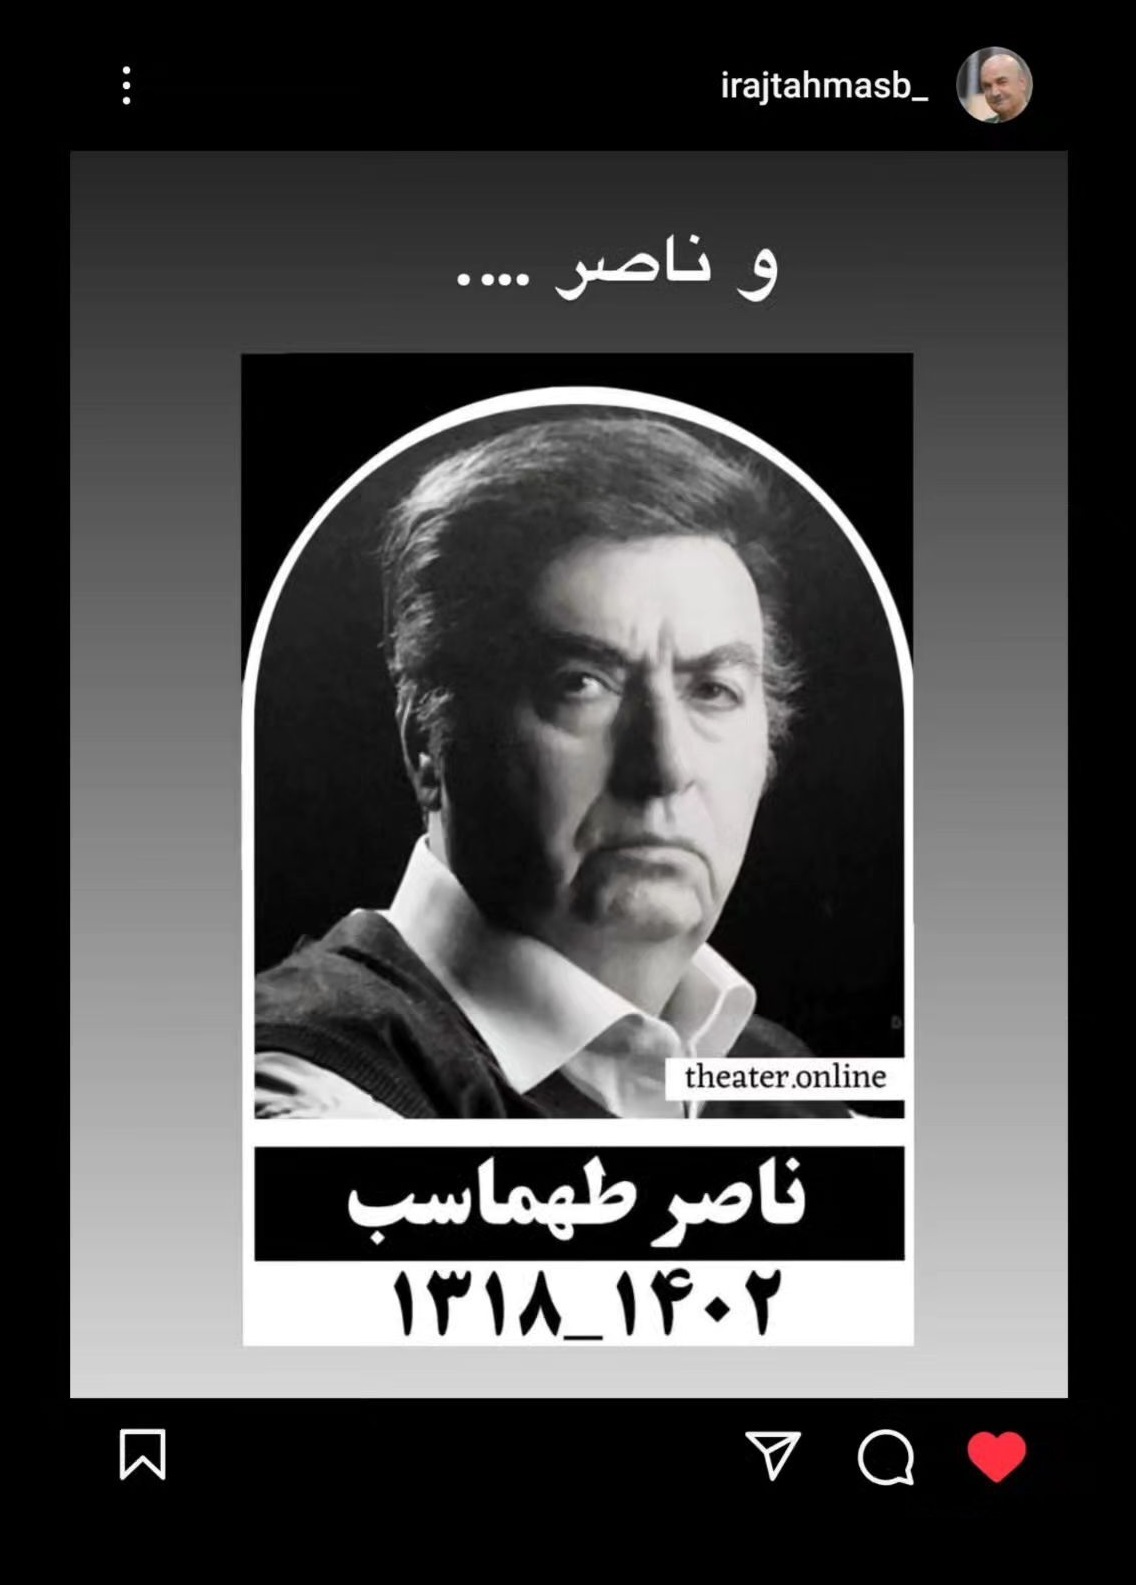 واکنش ایرج طهماسب به درگذشت برادرش ناصر طهماسب (عکس)